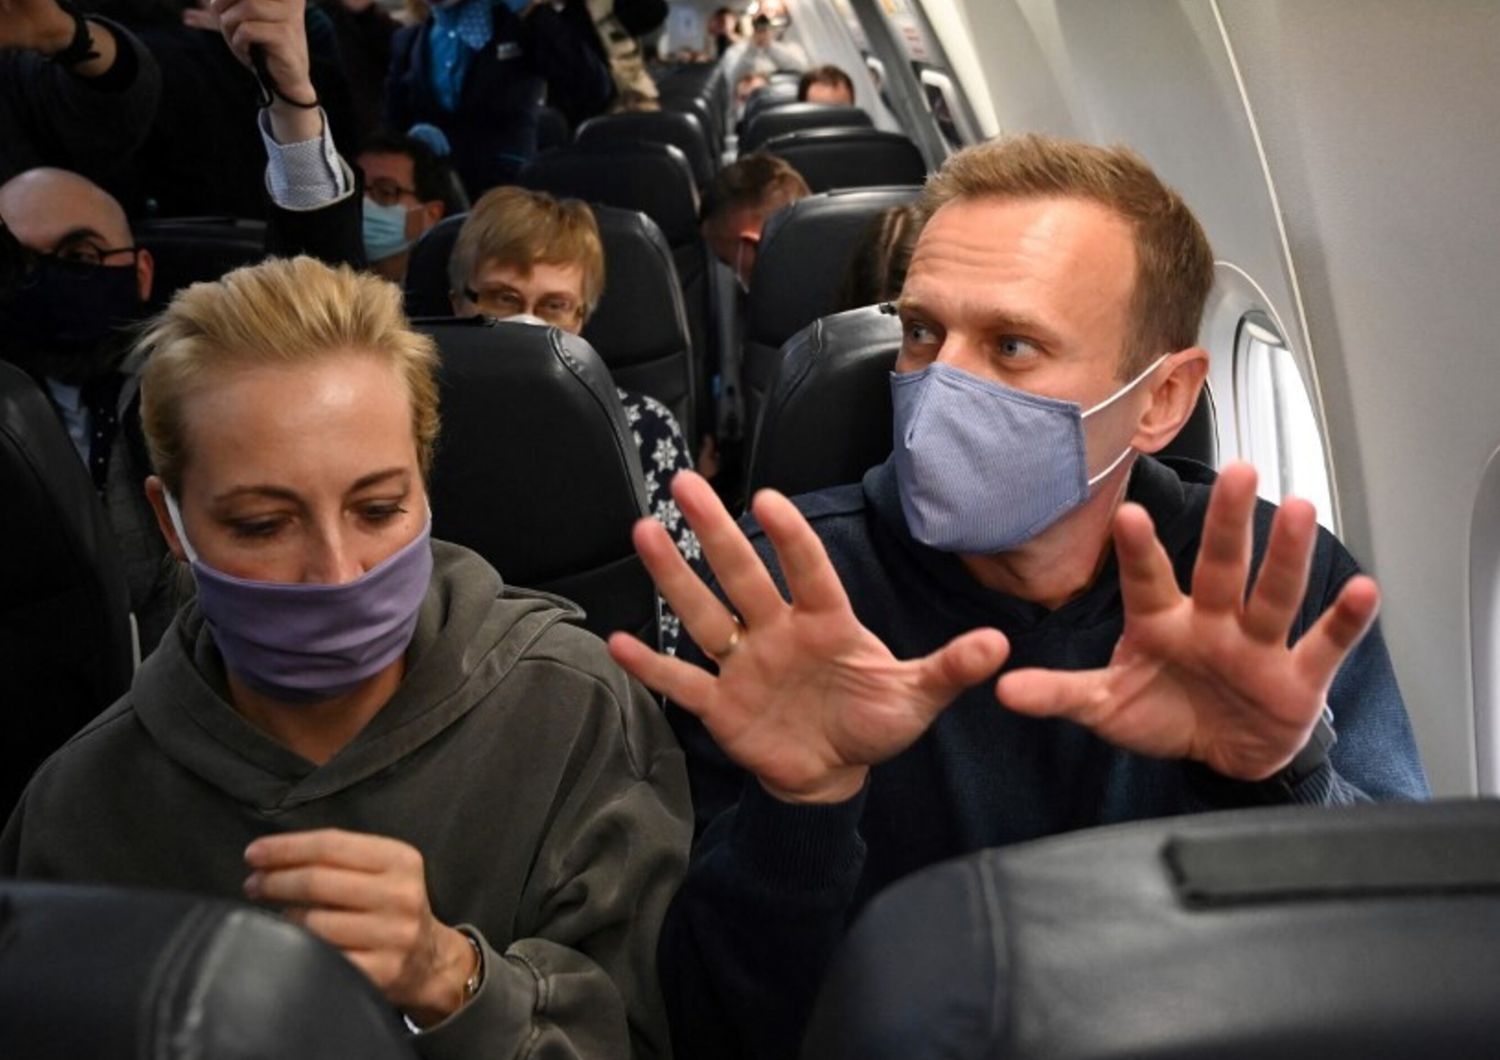 L'oppositore russo Navalny e la moglie Yulia in aereo prima del decollo a Berlino, 17 gennaio 2021